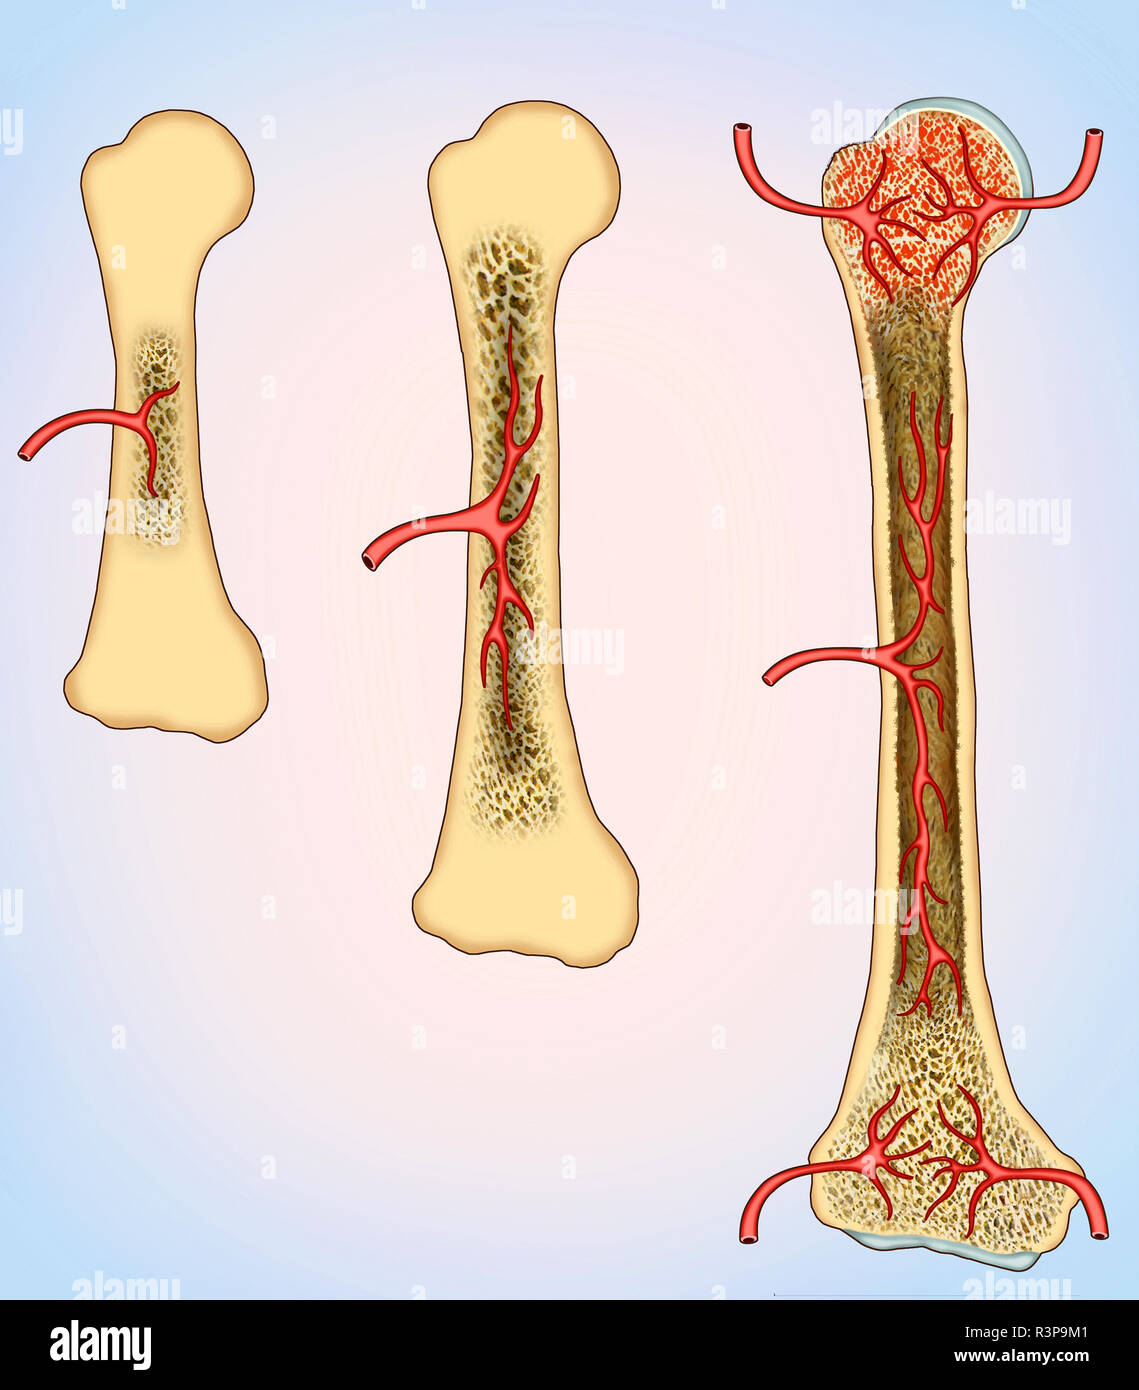 Illustrazione del processo di formazione di nuovo tessuto osseo da parte di cellule chiamate osteoblasti. È correlato ai fattori di crescita e alle proteine molecolari. Foto Stock